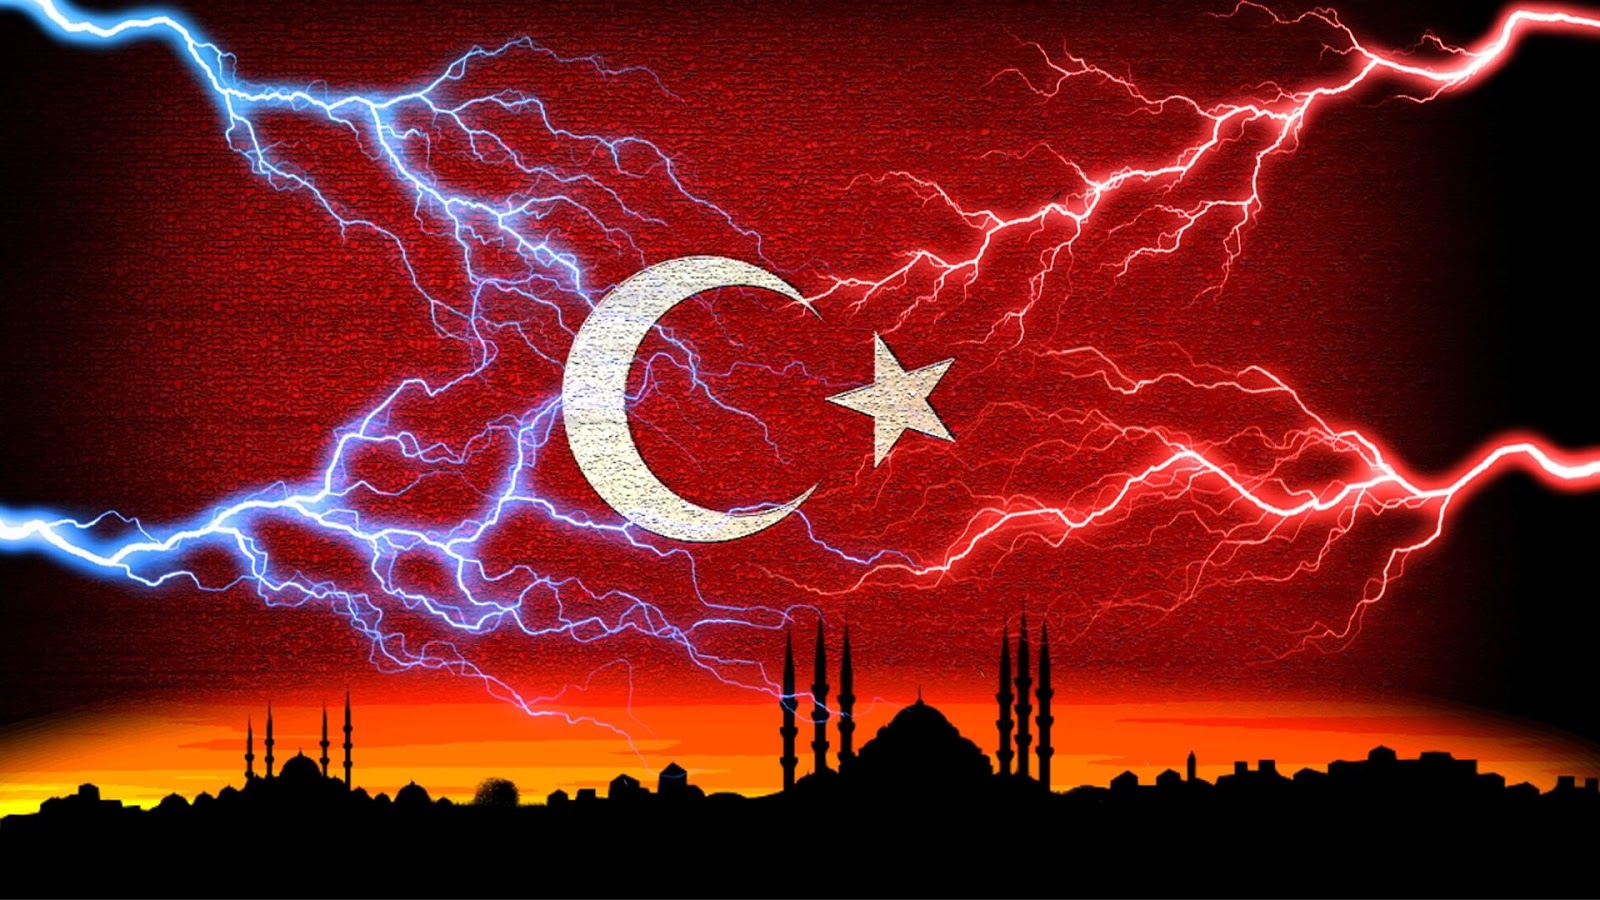 turkiye wallpaper,thunder,lightning,thunderstorm,sky,red